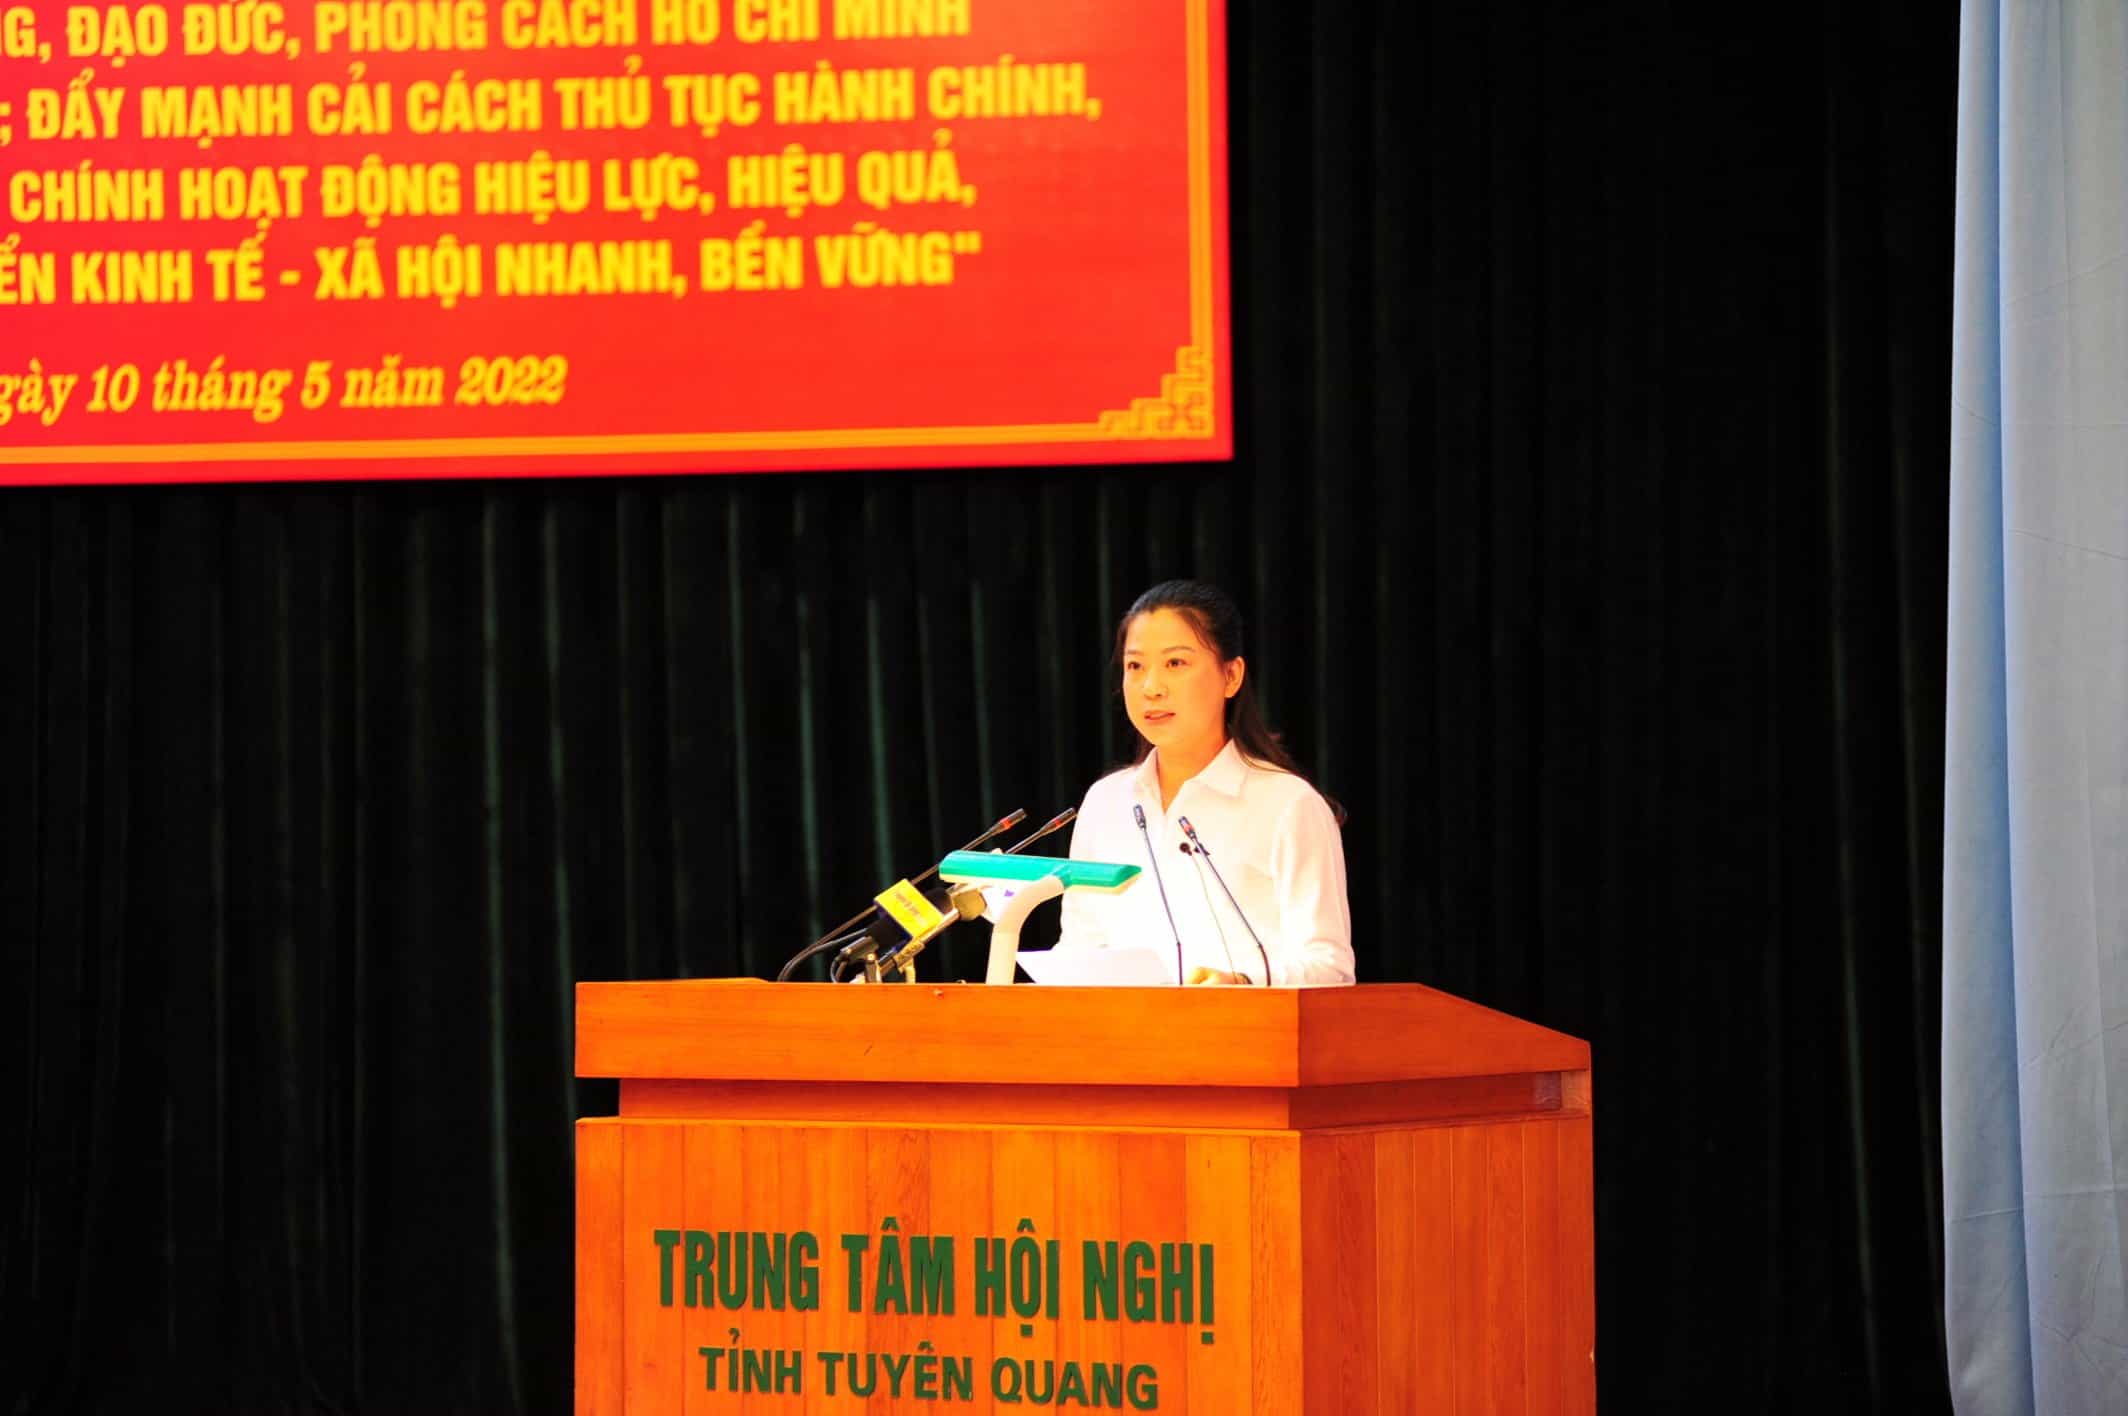 Bài phát biểu khai mạc hội nghị công nhân viên chức